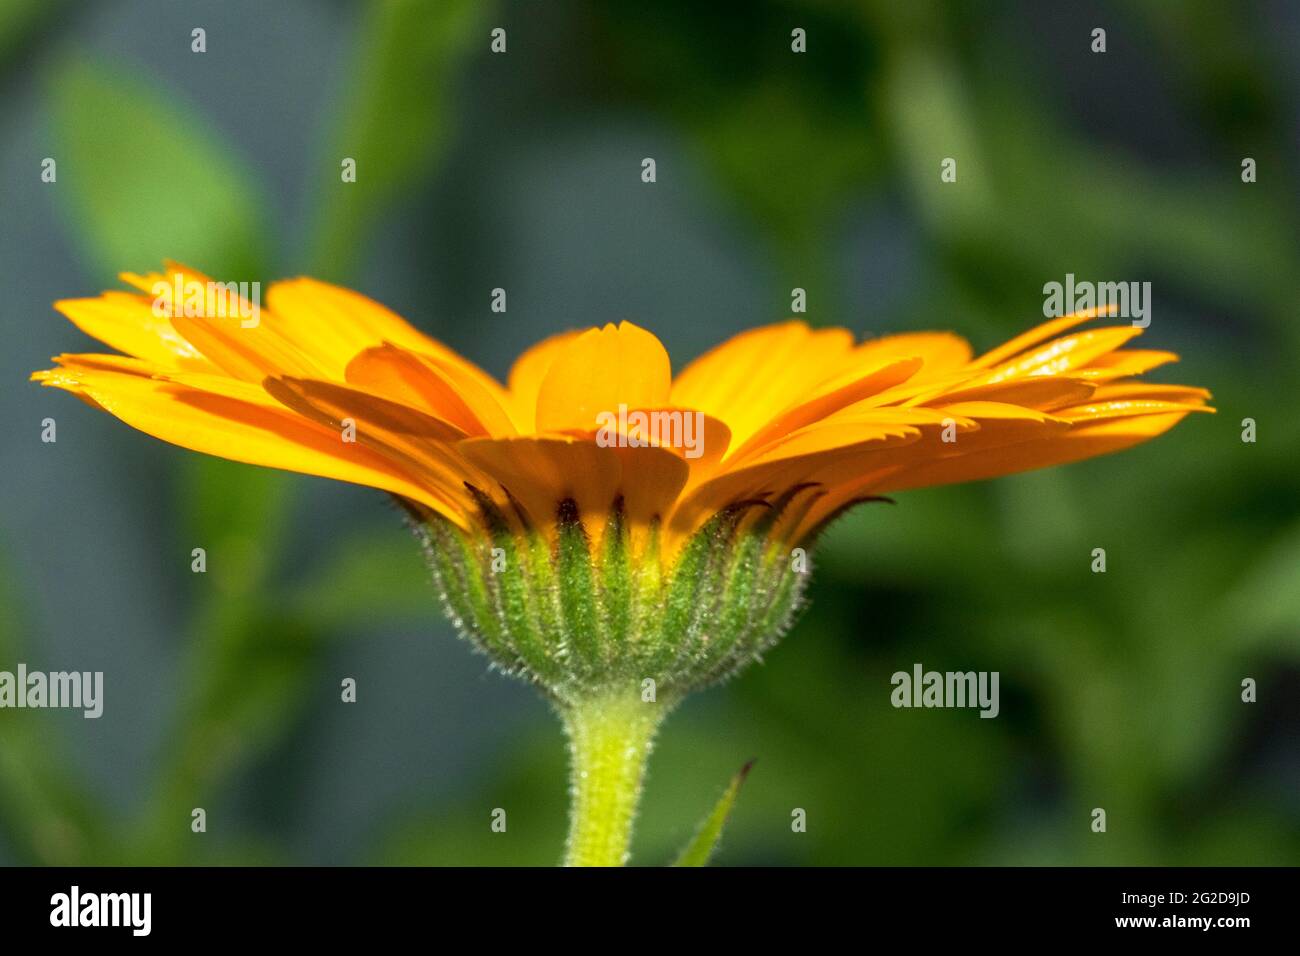 Bel fiore marigold in primo piano Foto Stock